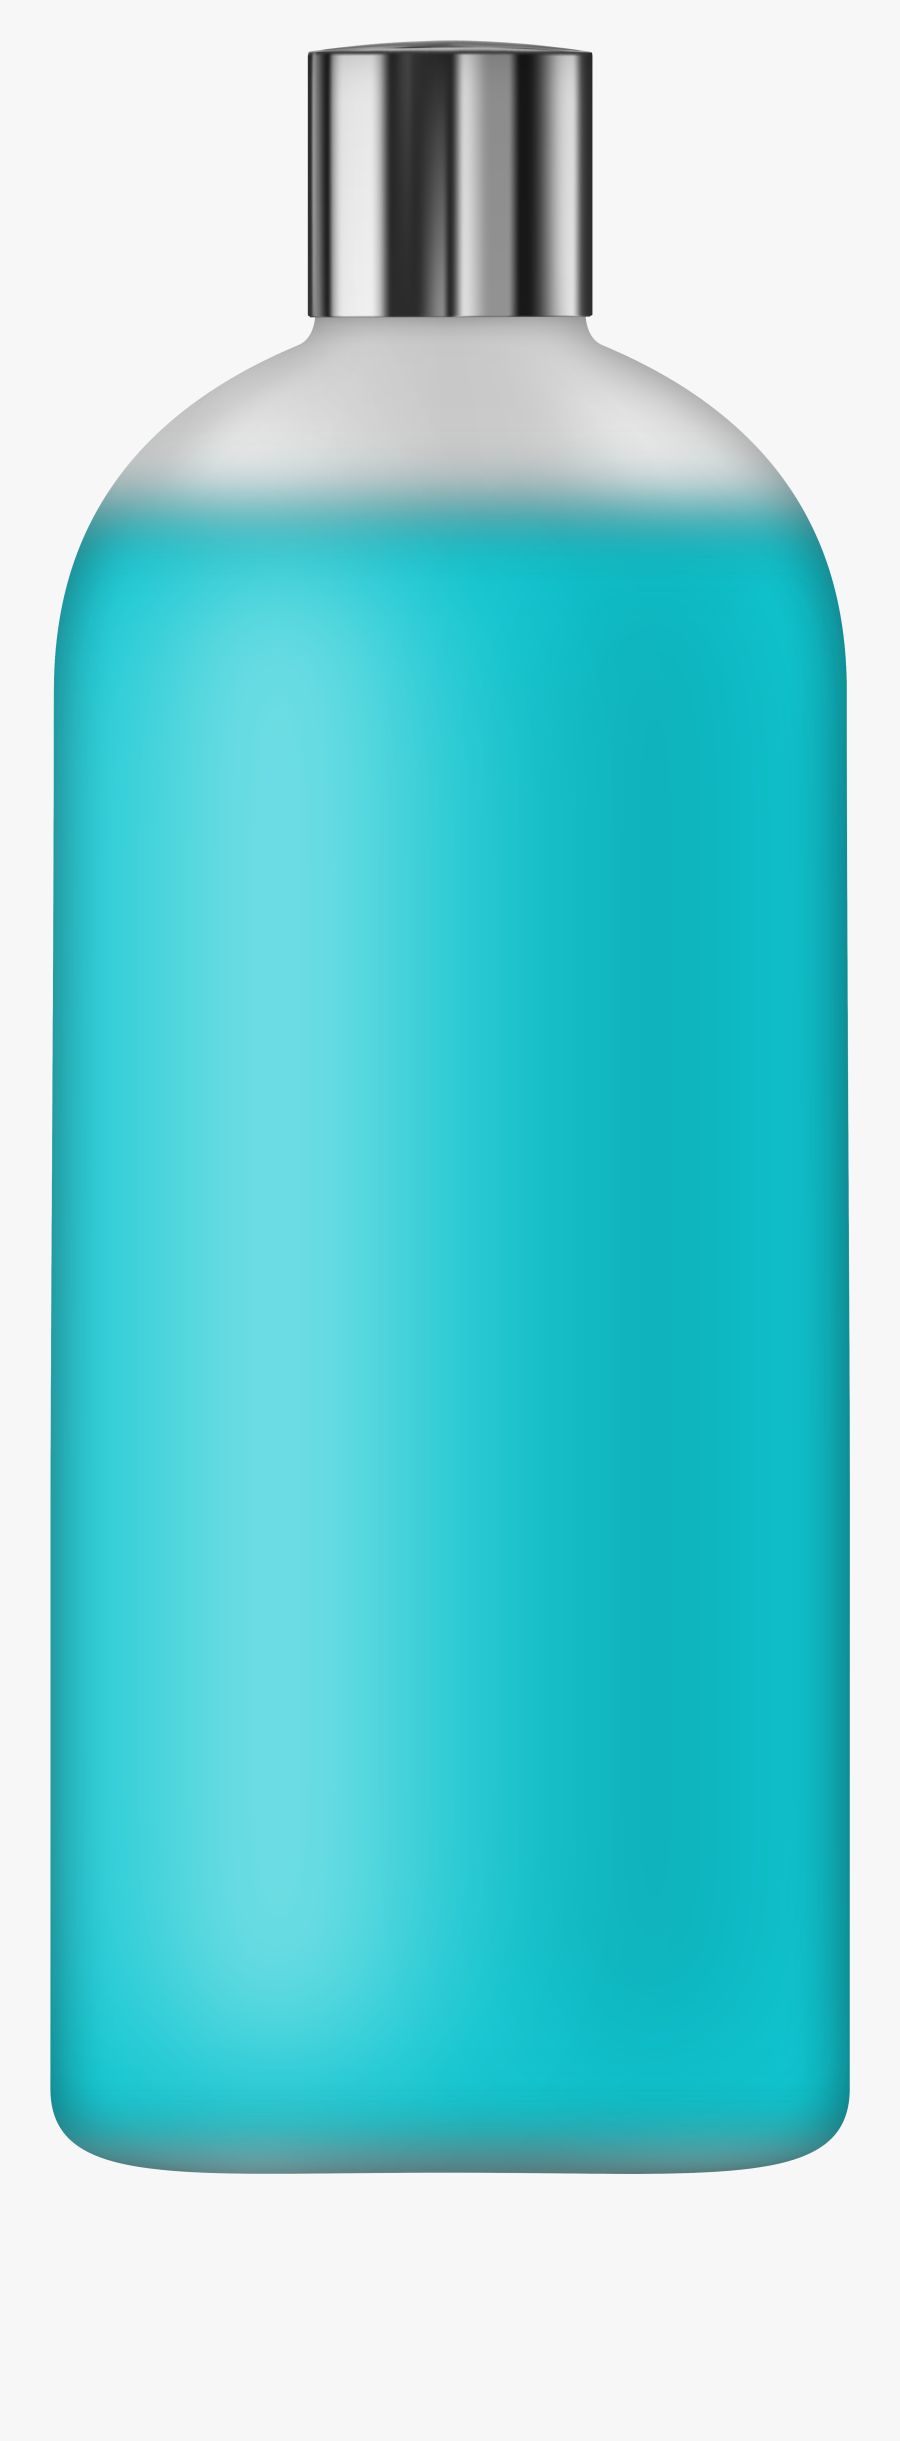 Liquid Soap Blue Png Clip Art - Furniture, Transparent Clipart